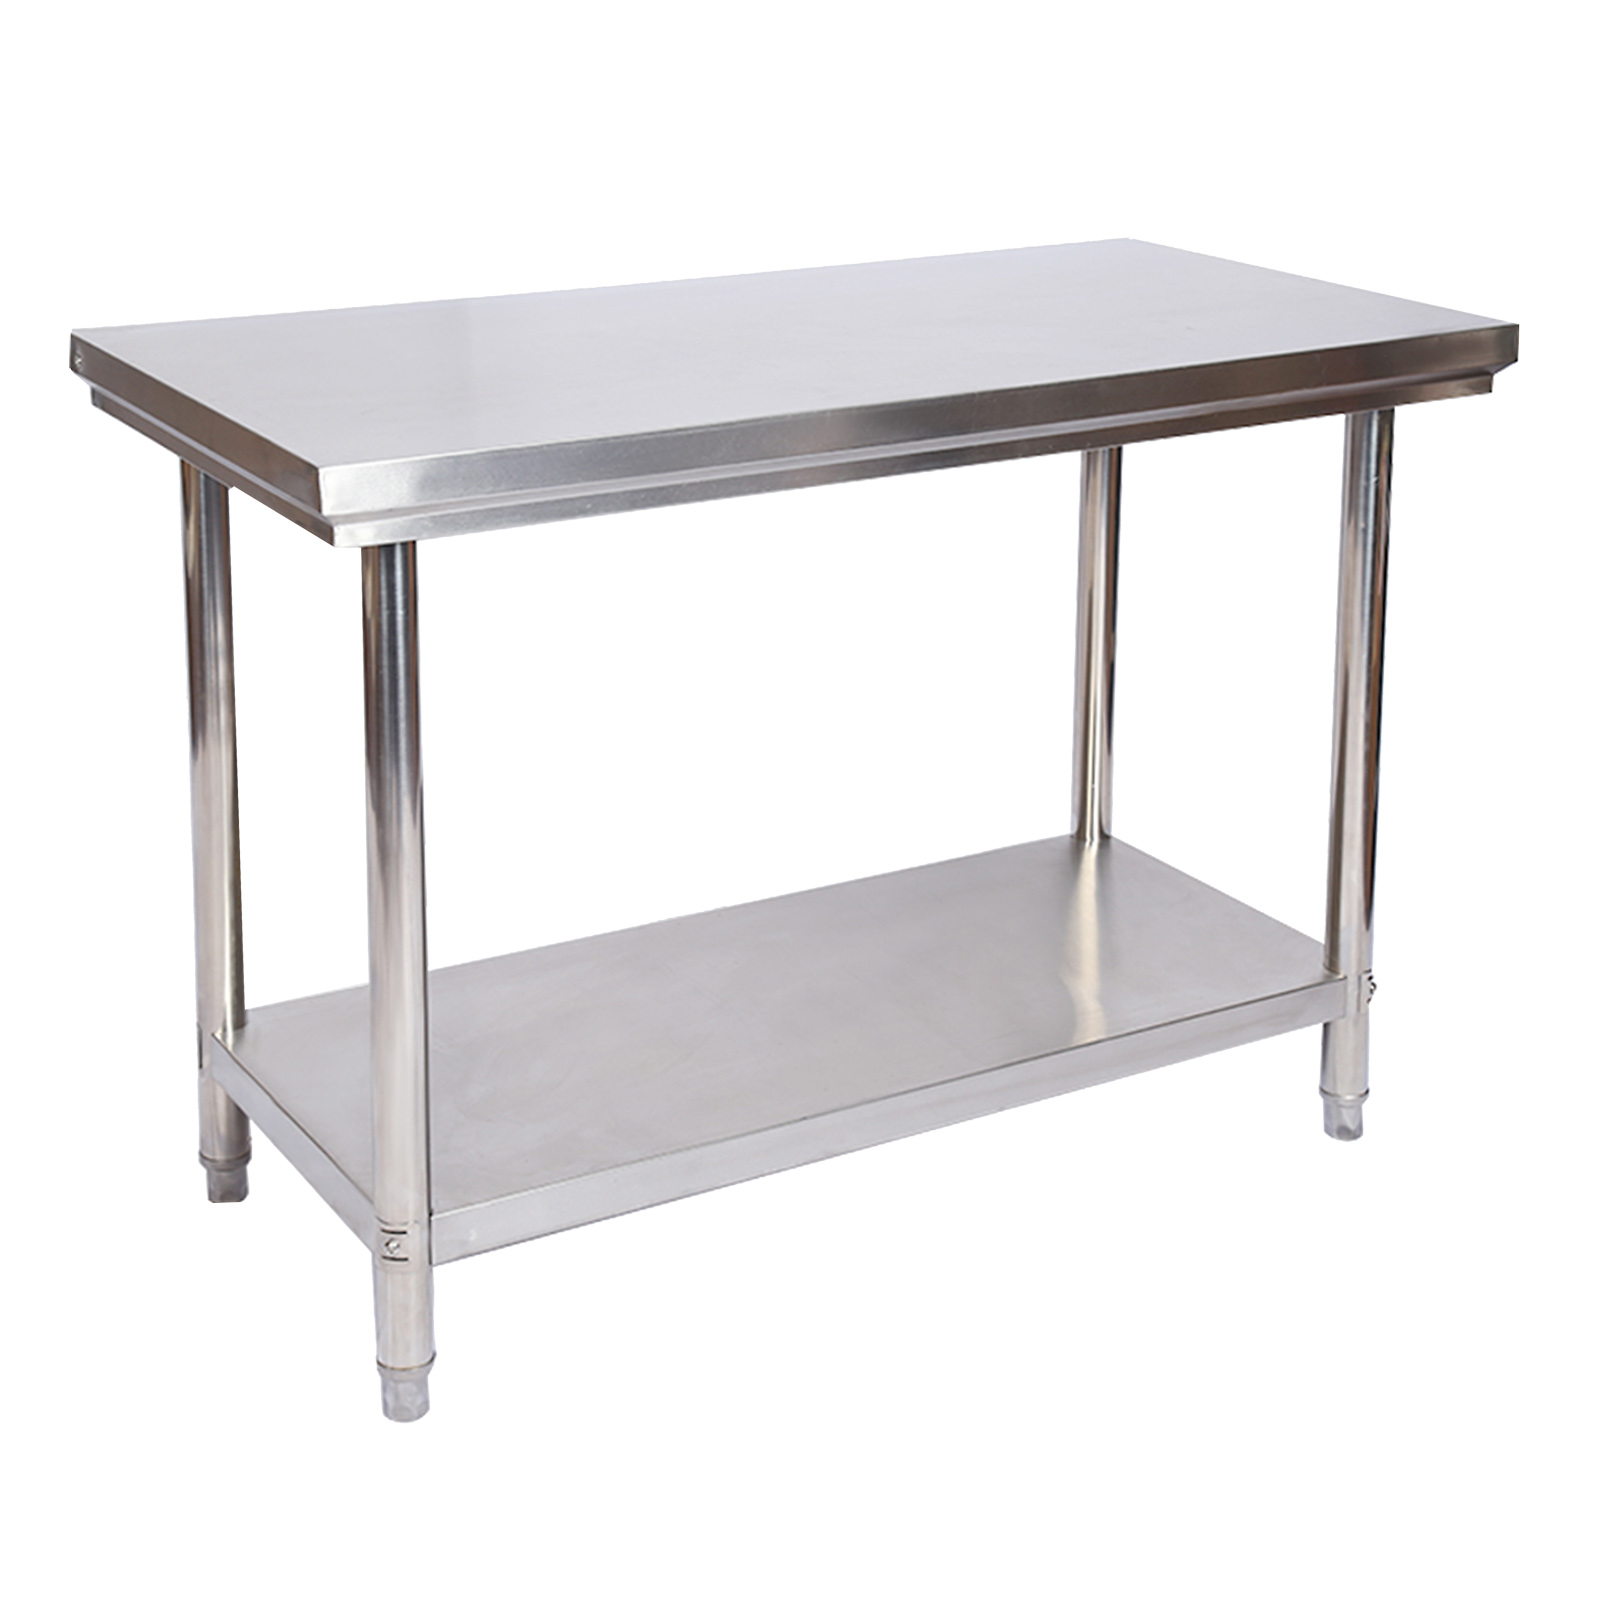 Edelstahl Tisch Arbeitstisch Edelstahltisch Gartentisch 100x60x85 cm